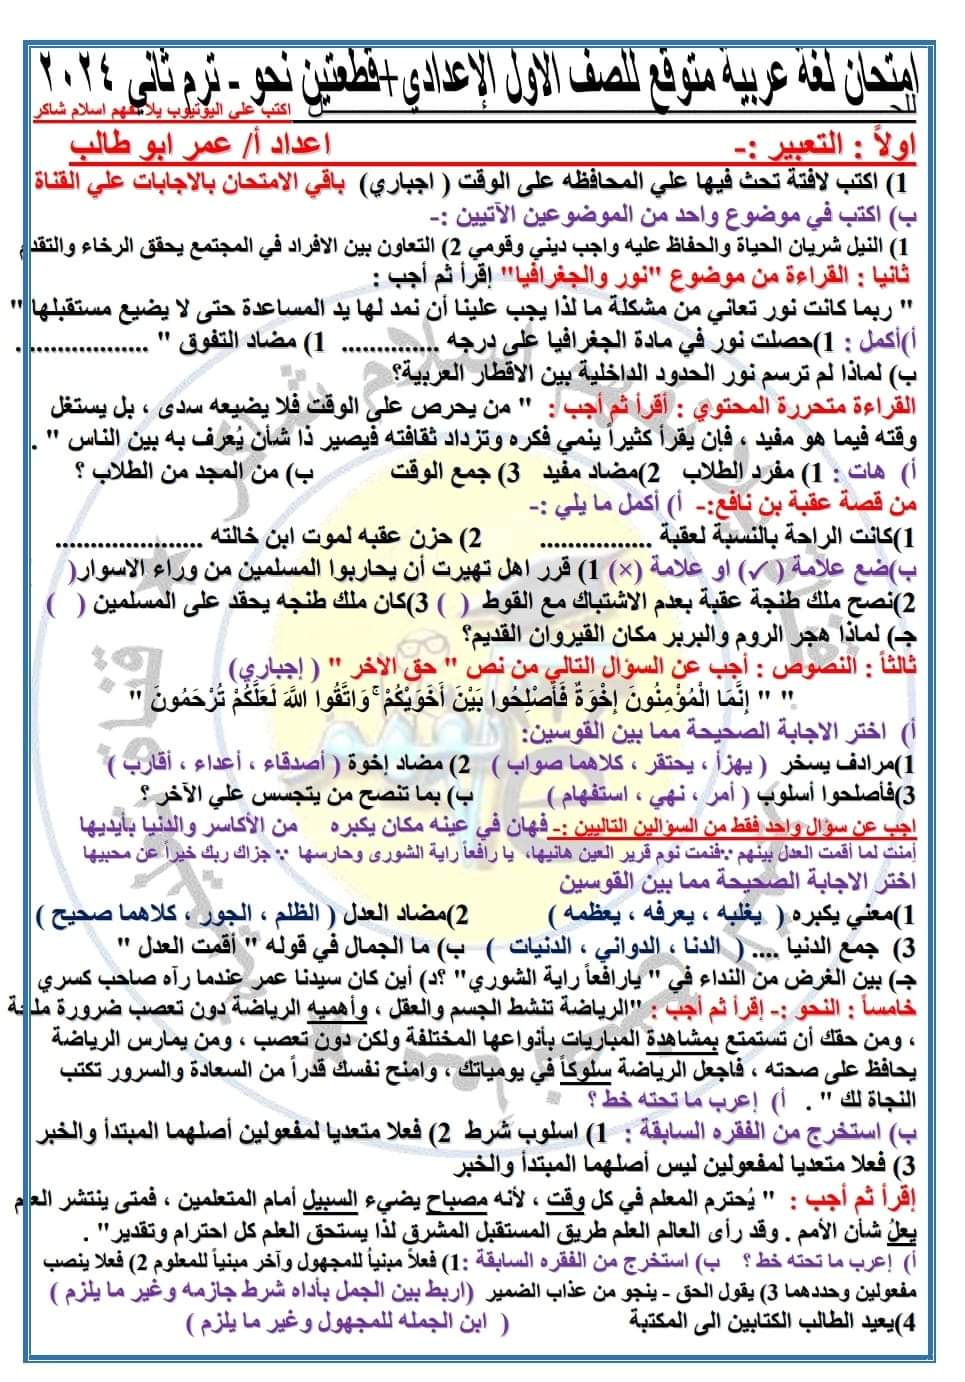 امتحان اللغة العربية المتوقع الصف الأول الاعدادي الفصل الدراسي الثاني ٢٠٢٤